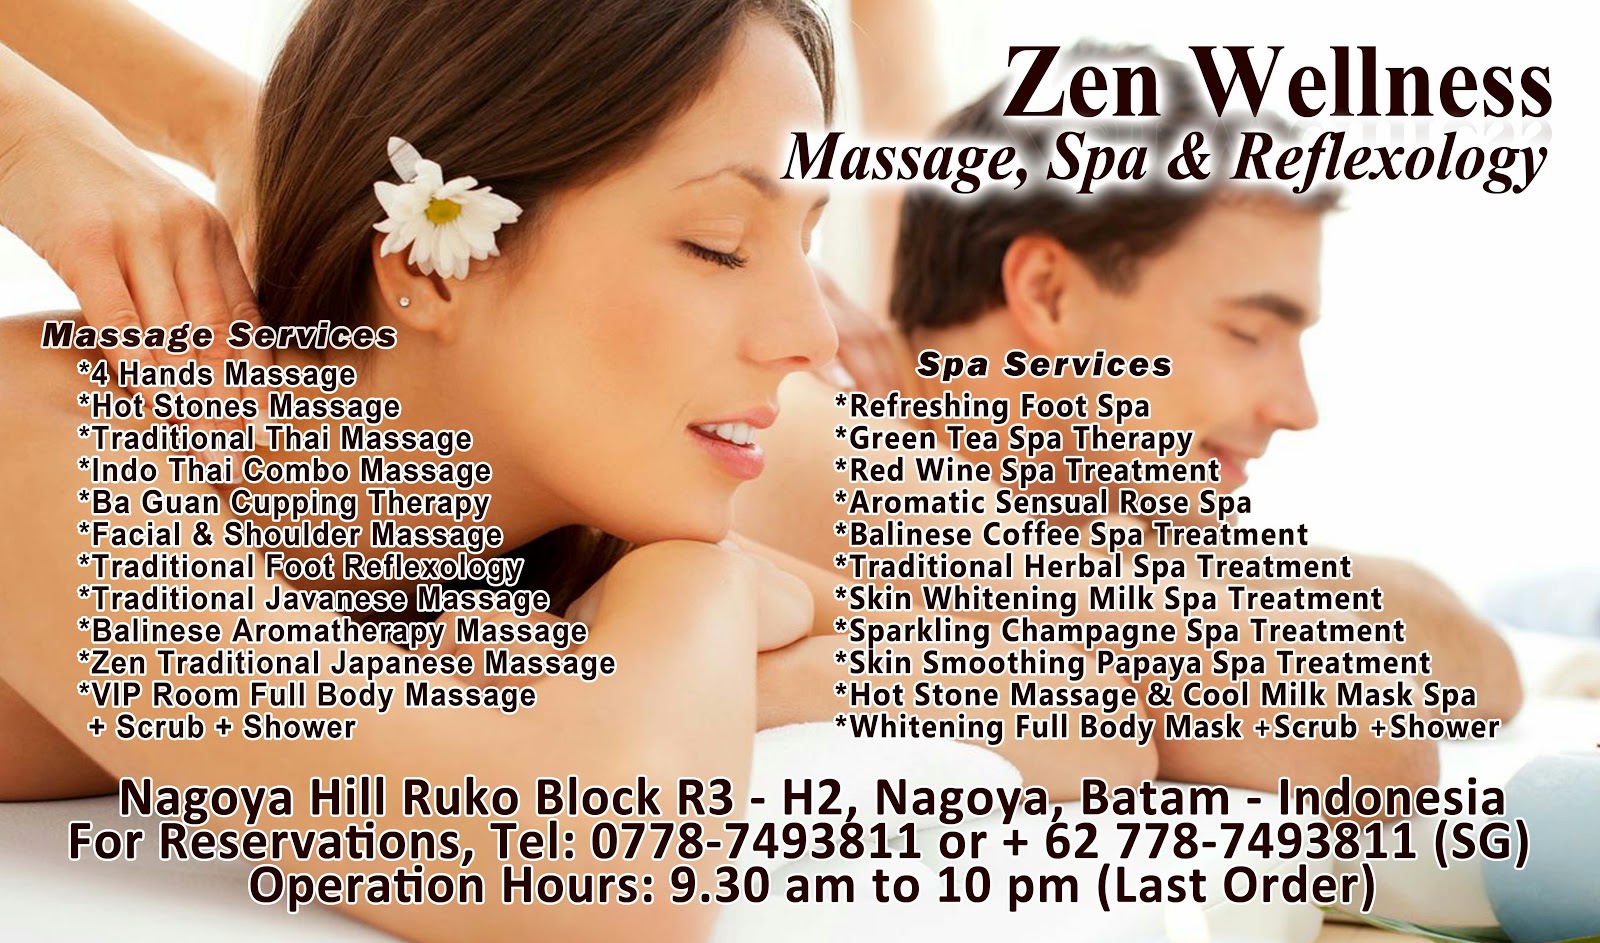 Zen Wellness Batam Massage Spa And Reflexology Zen Wellness